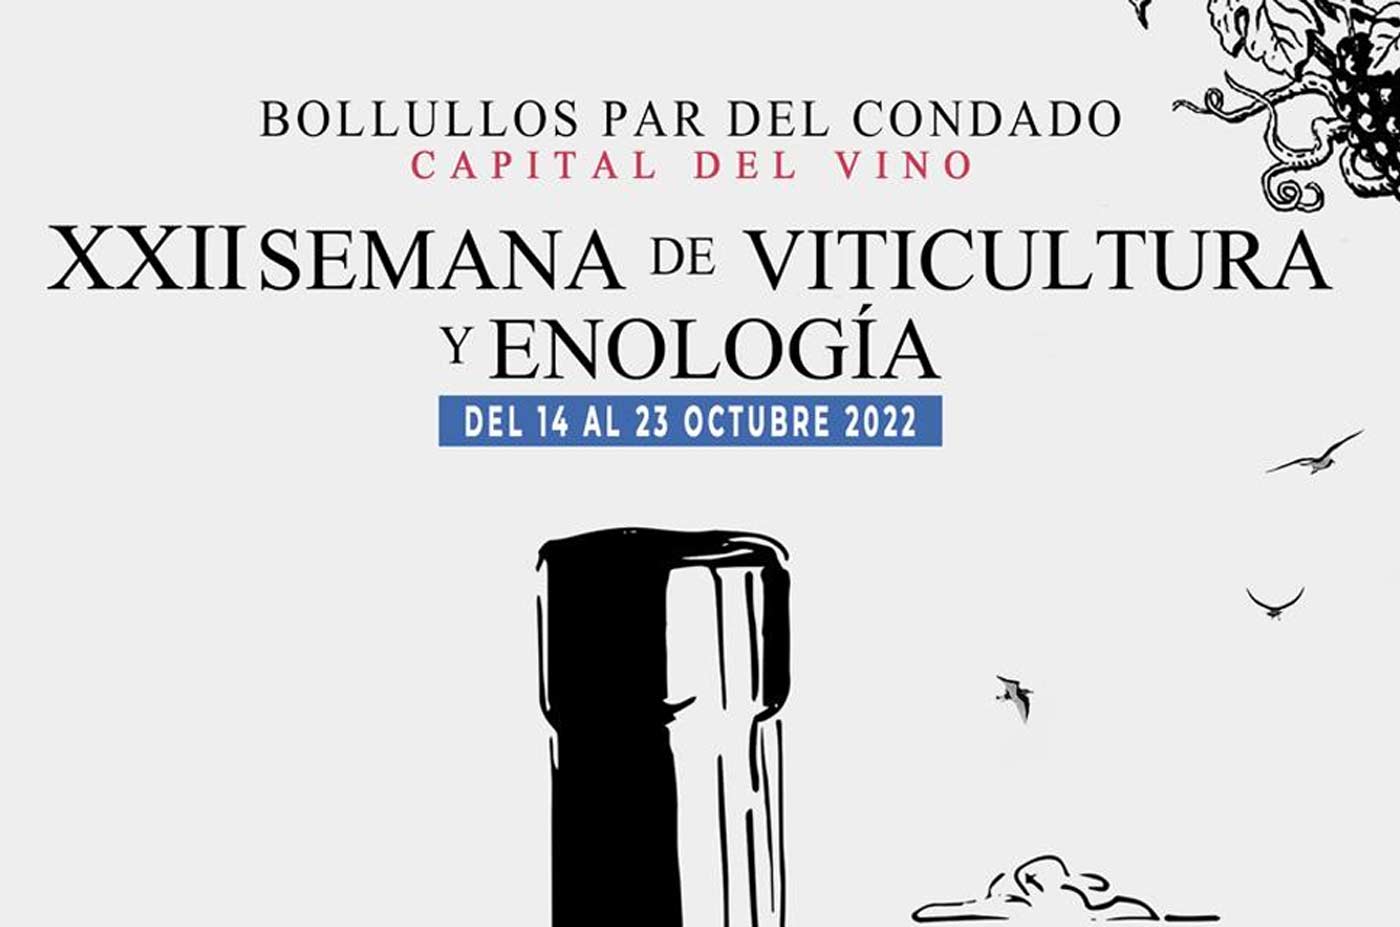 Semana de Viticultura y enologia 4 al 23 de octubre Bollullos del condado 2022